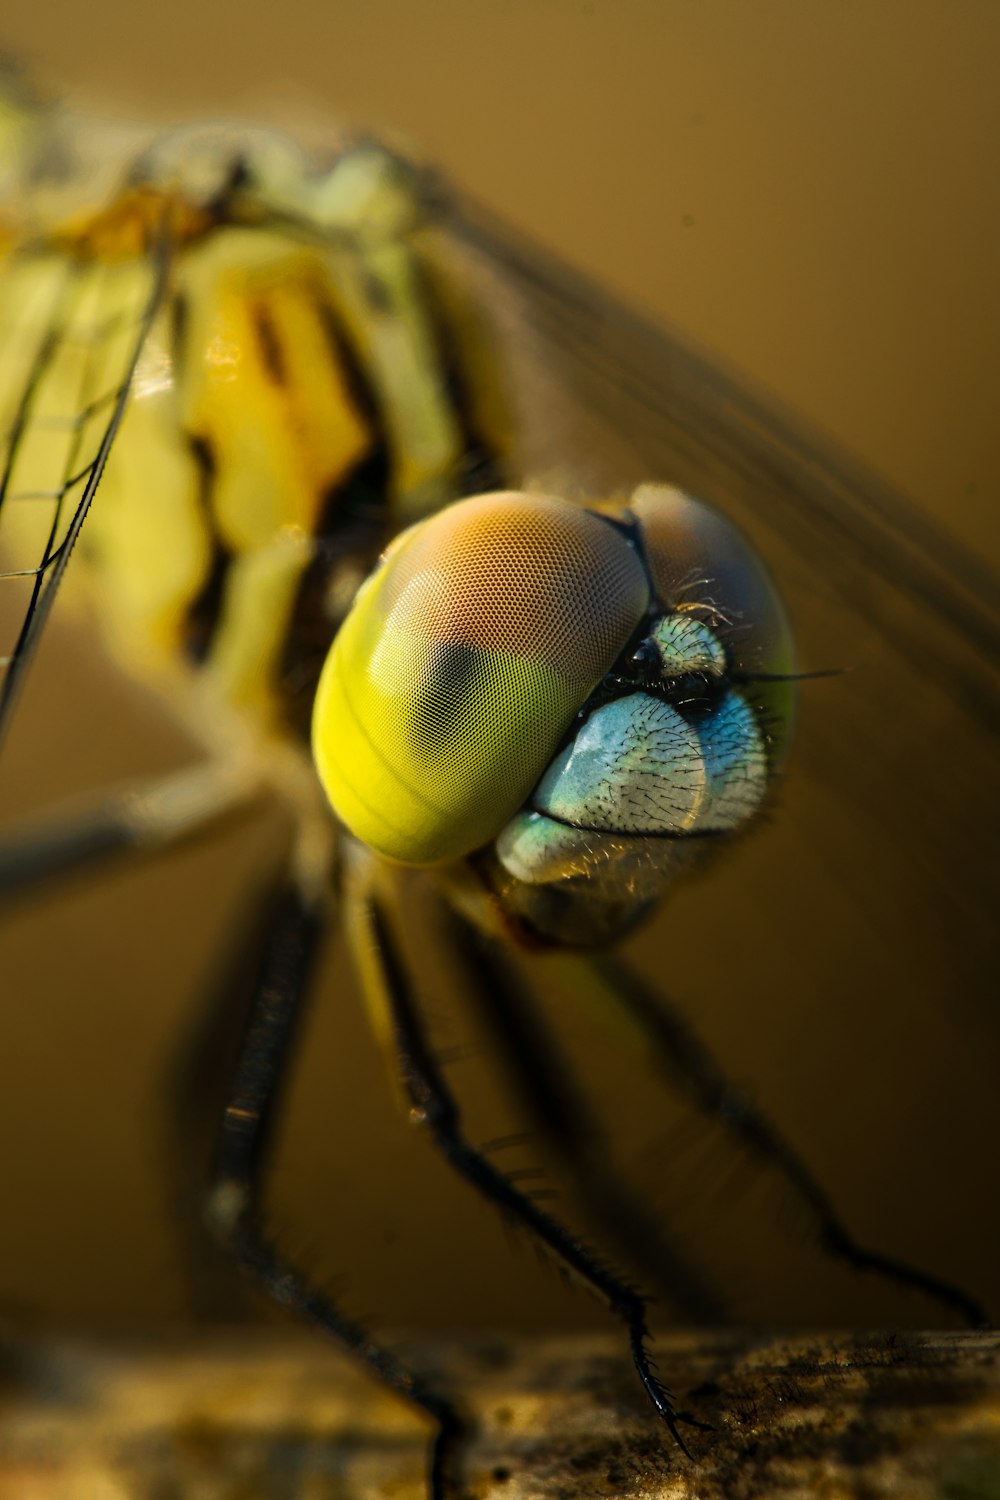 um close up de um inseto amarelo e preto